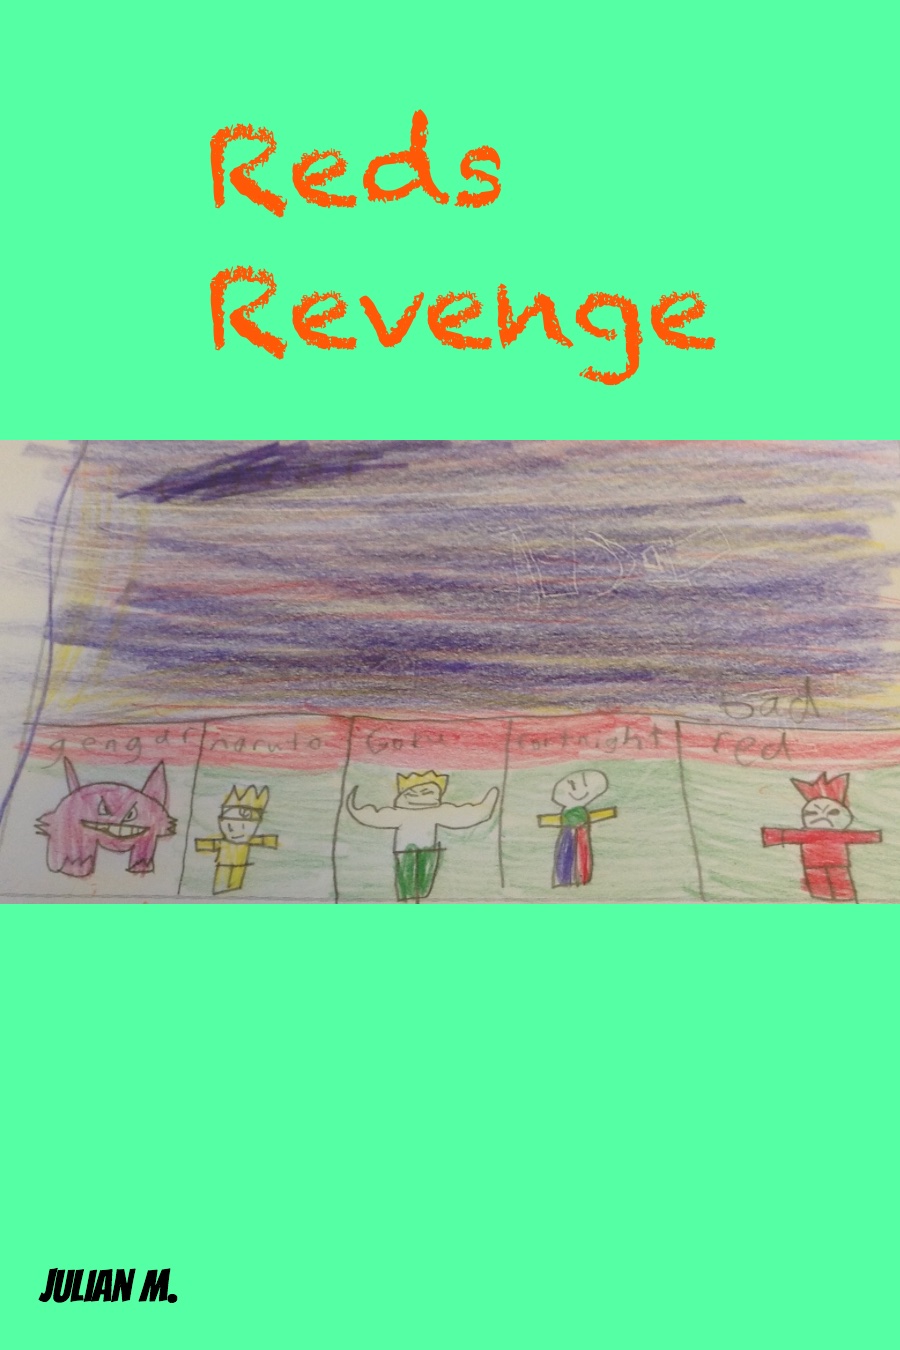 Red’s Revenge by Julian M